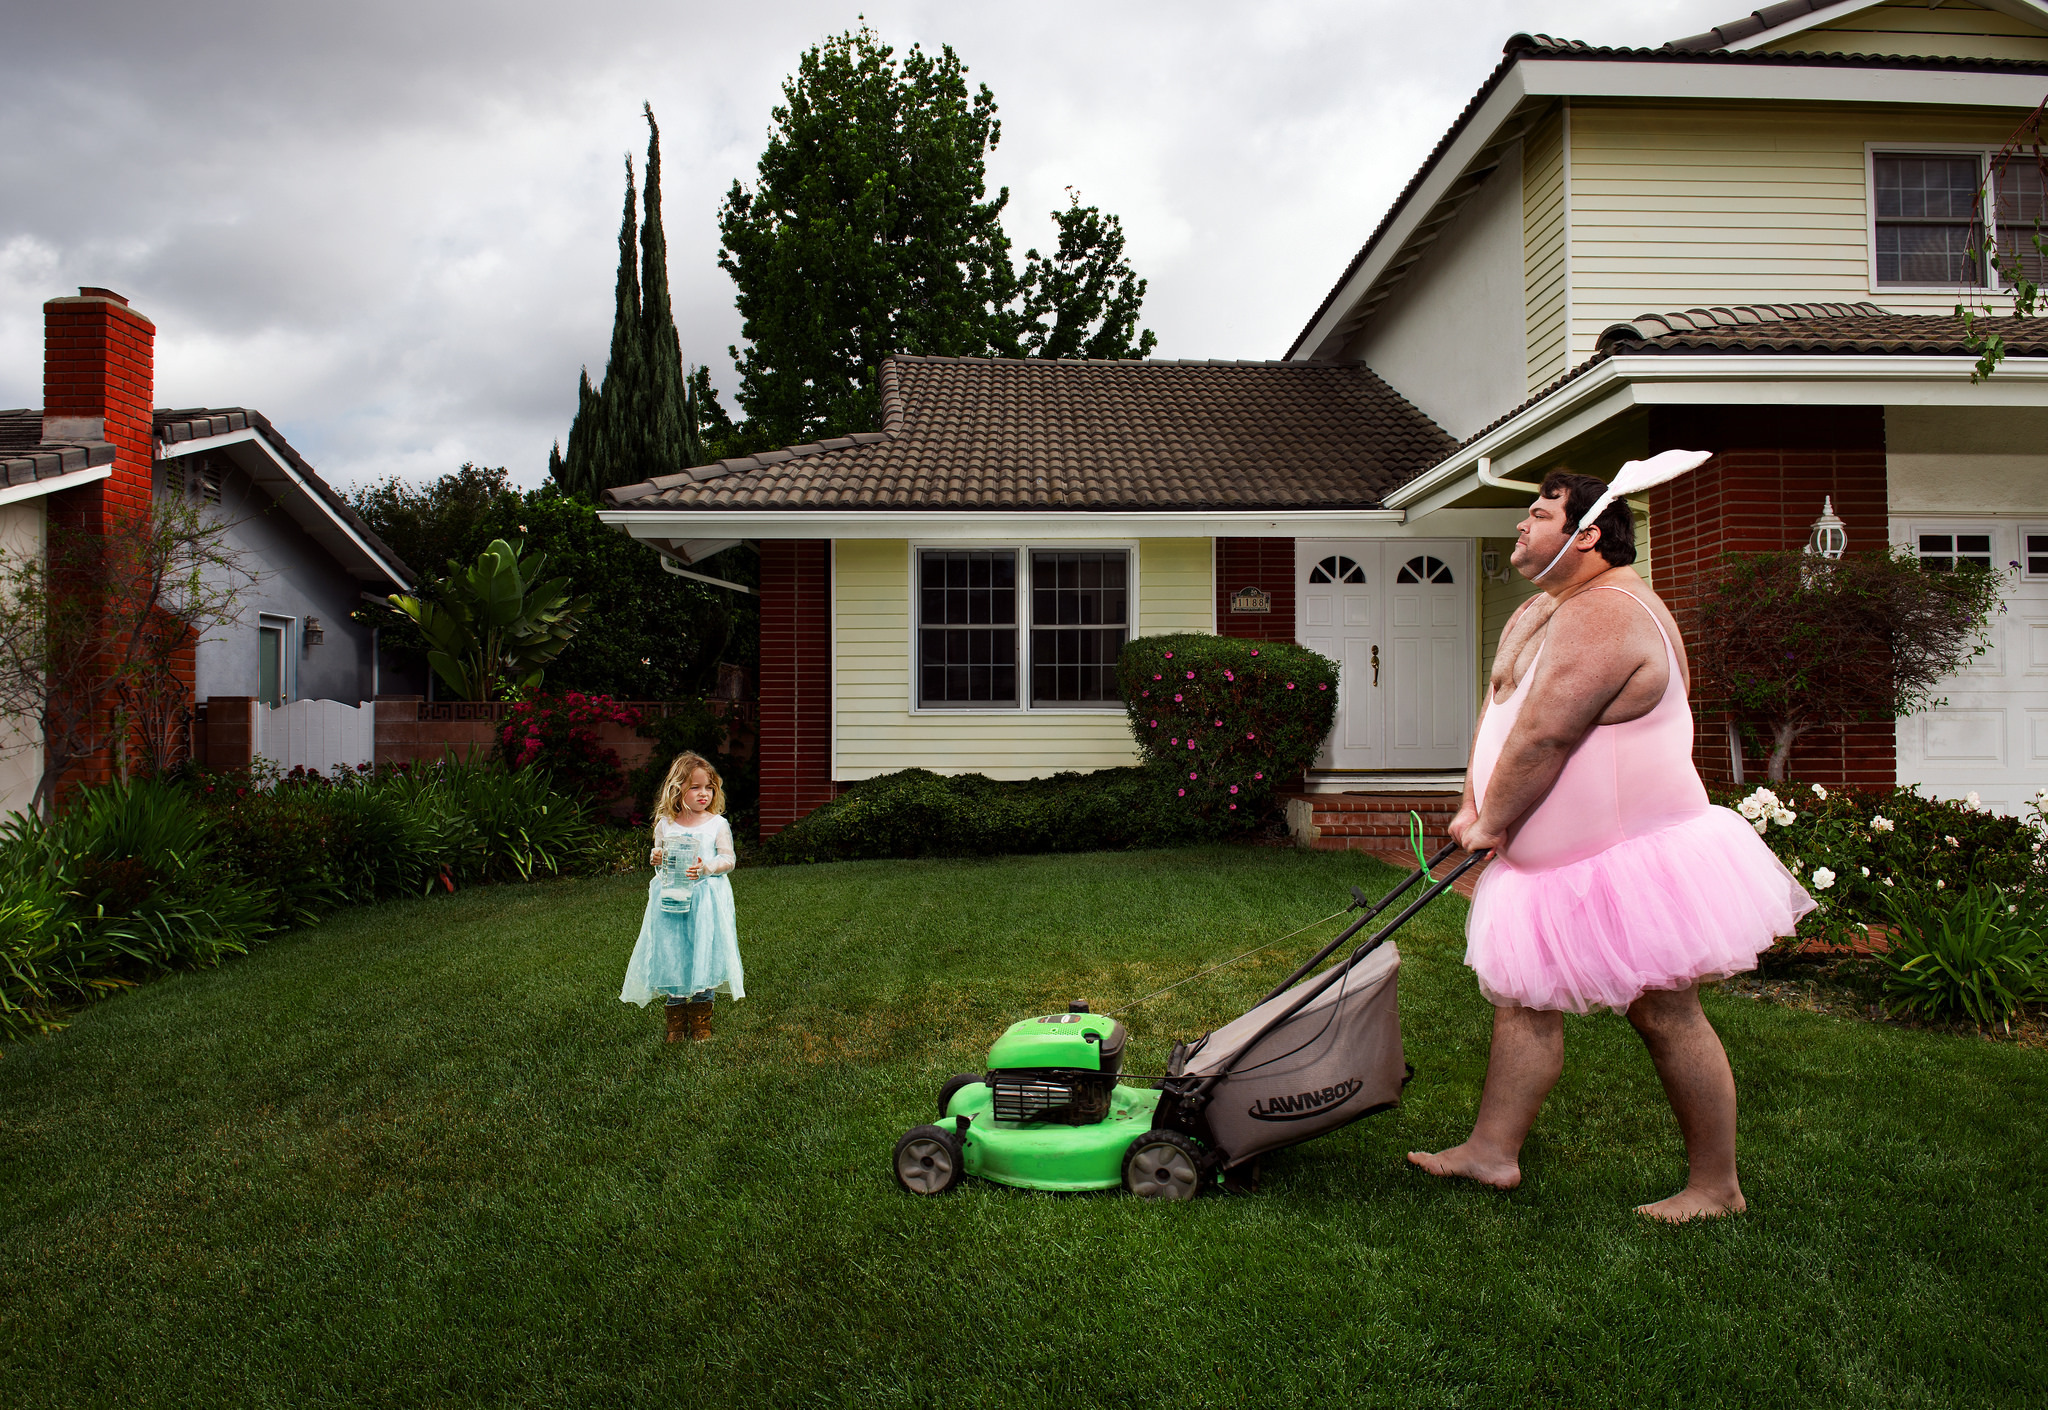 Соседская мамочка. Человек рядом с домом. Смешной дом. Девушка с газонокосилкой. Люди на даче.